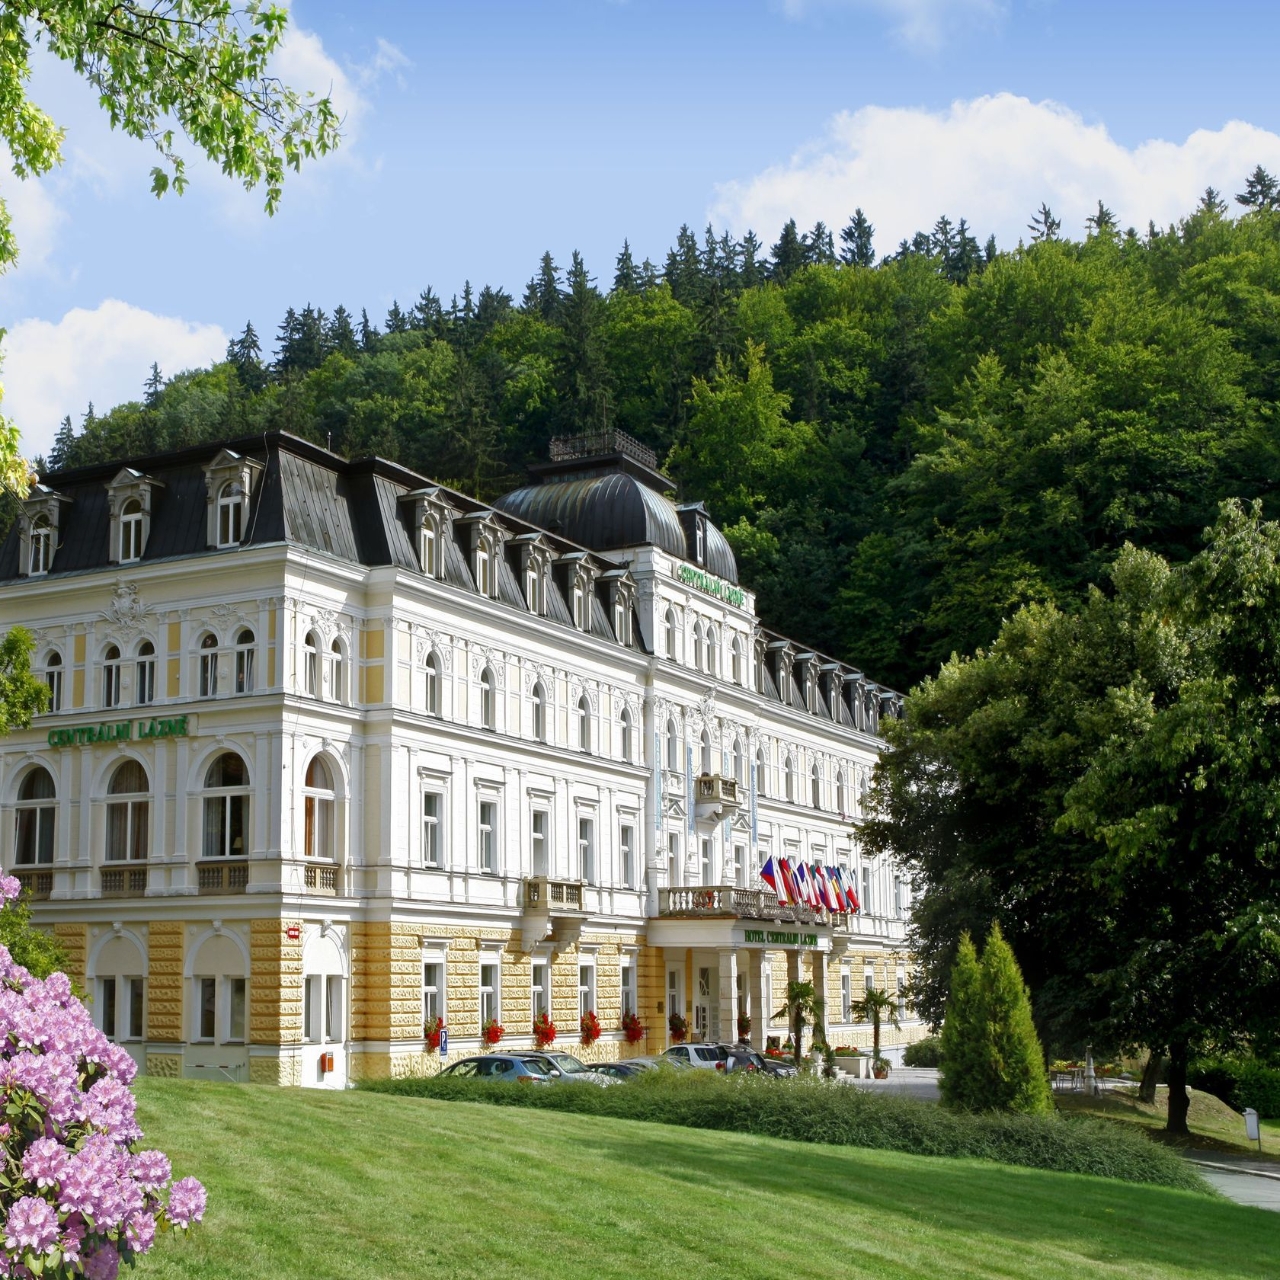 Hotel DHSR Centralni Lazne - 4 HRS star hotel in Mariánské Lázně (Karlovy  Vary)